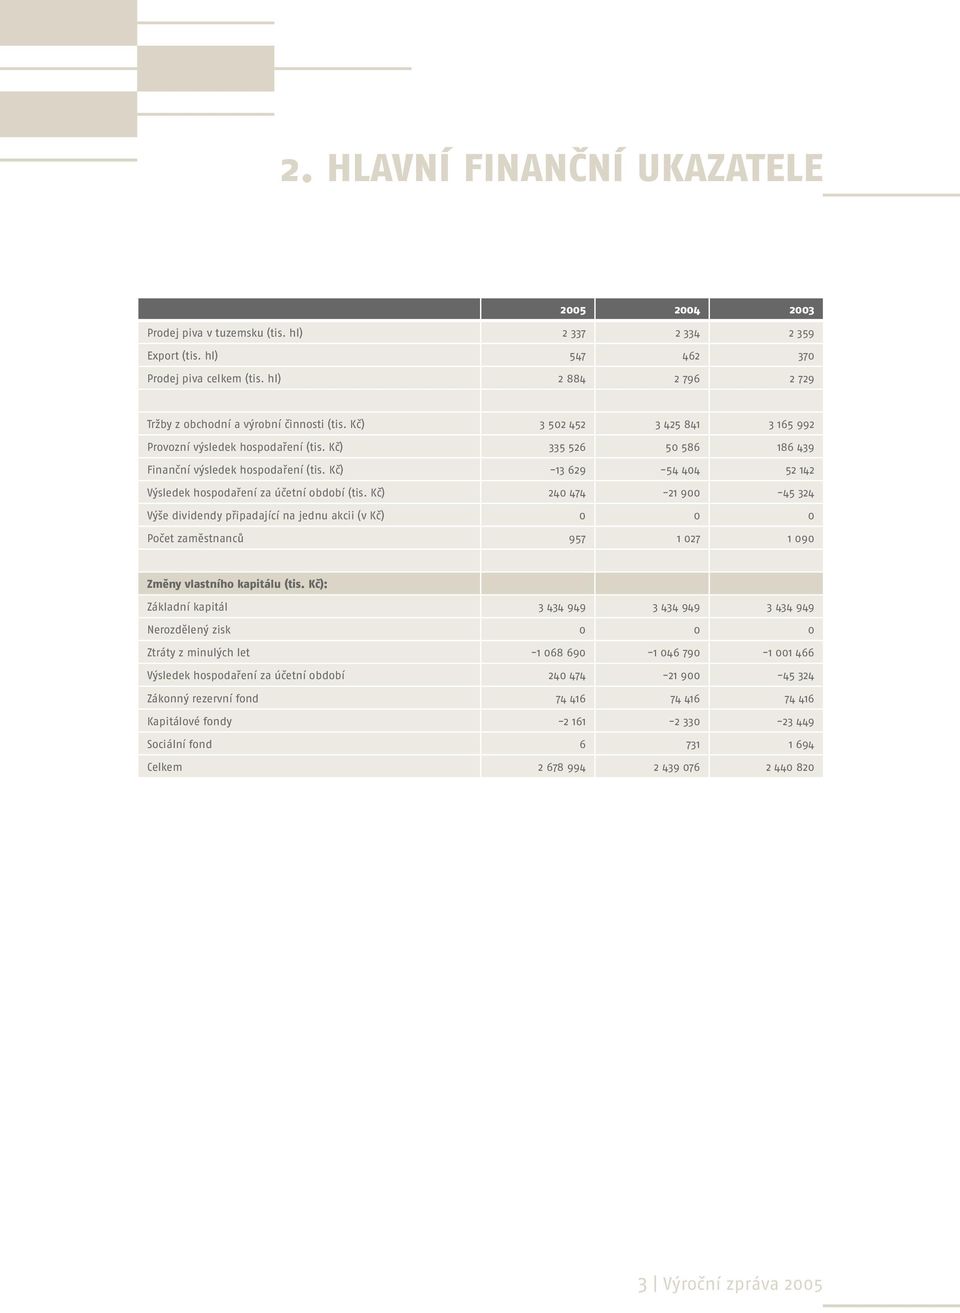 Kč) -13 629-54 404 52 142 Výsledek hospodaření za účetní období (tis.